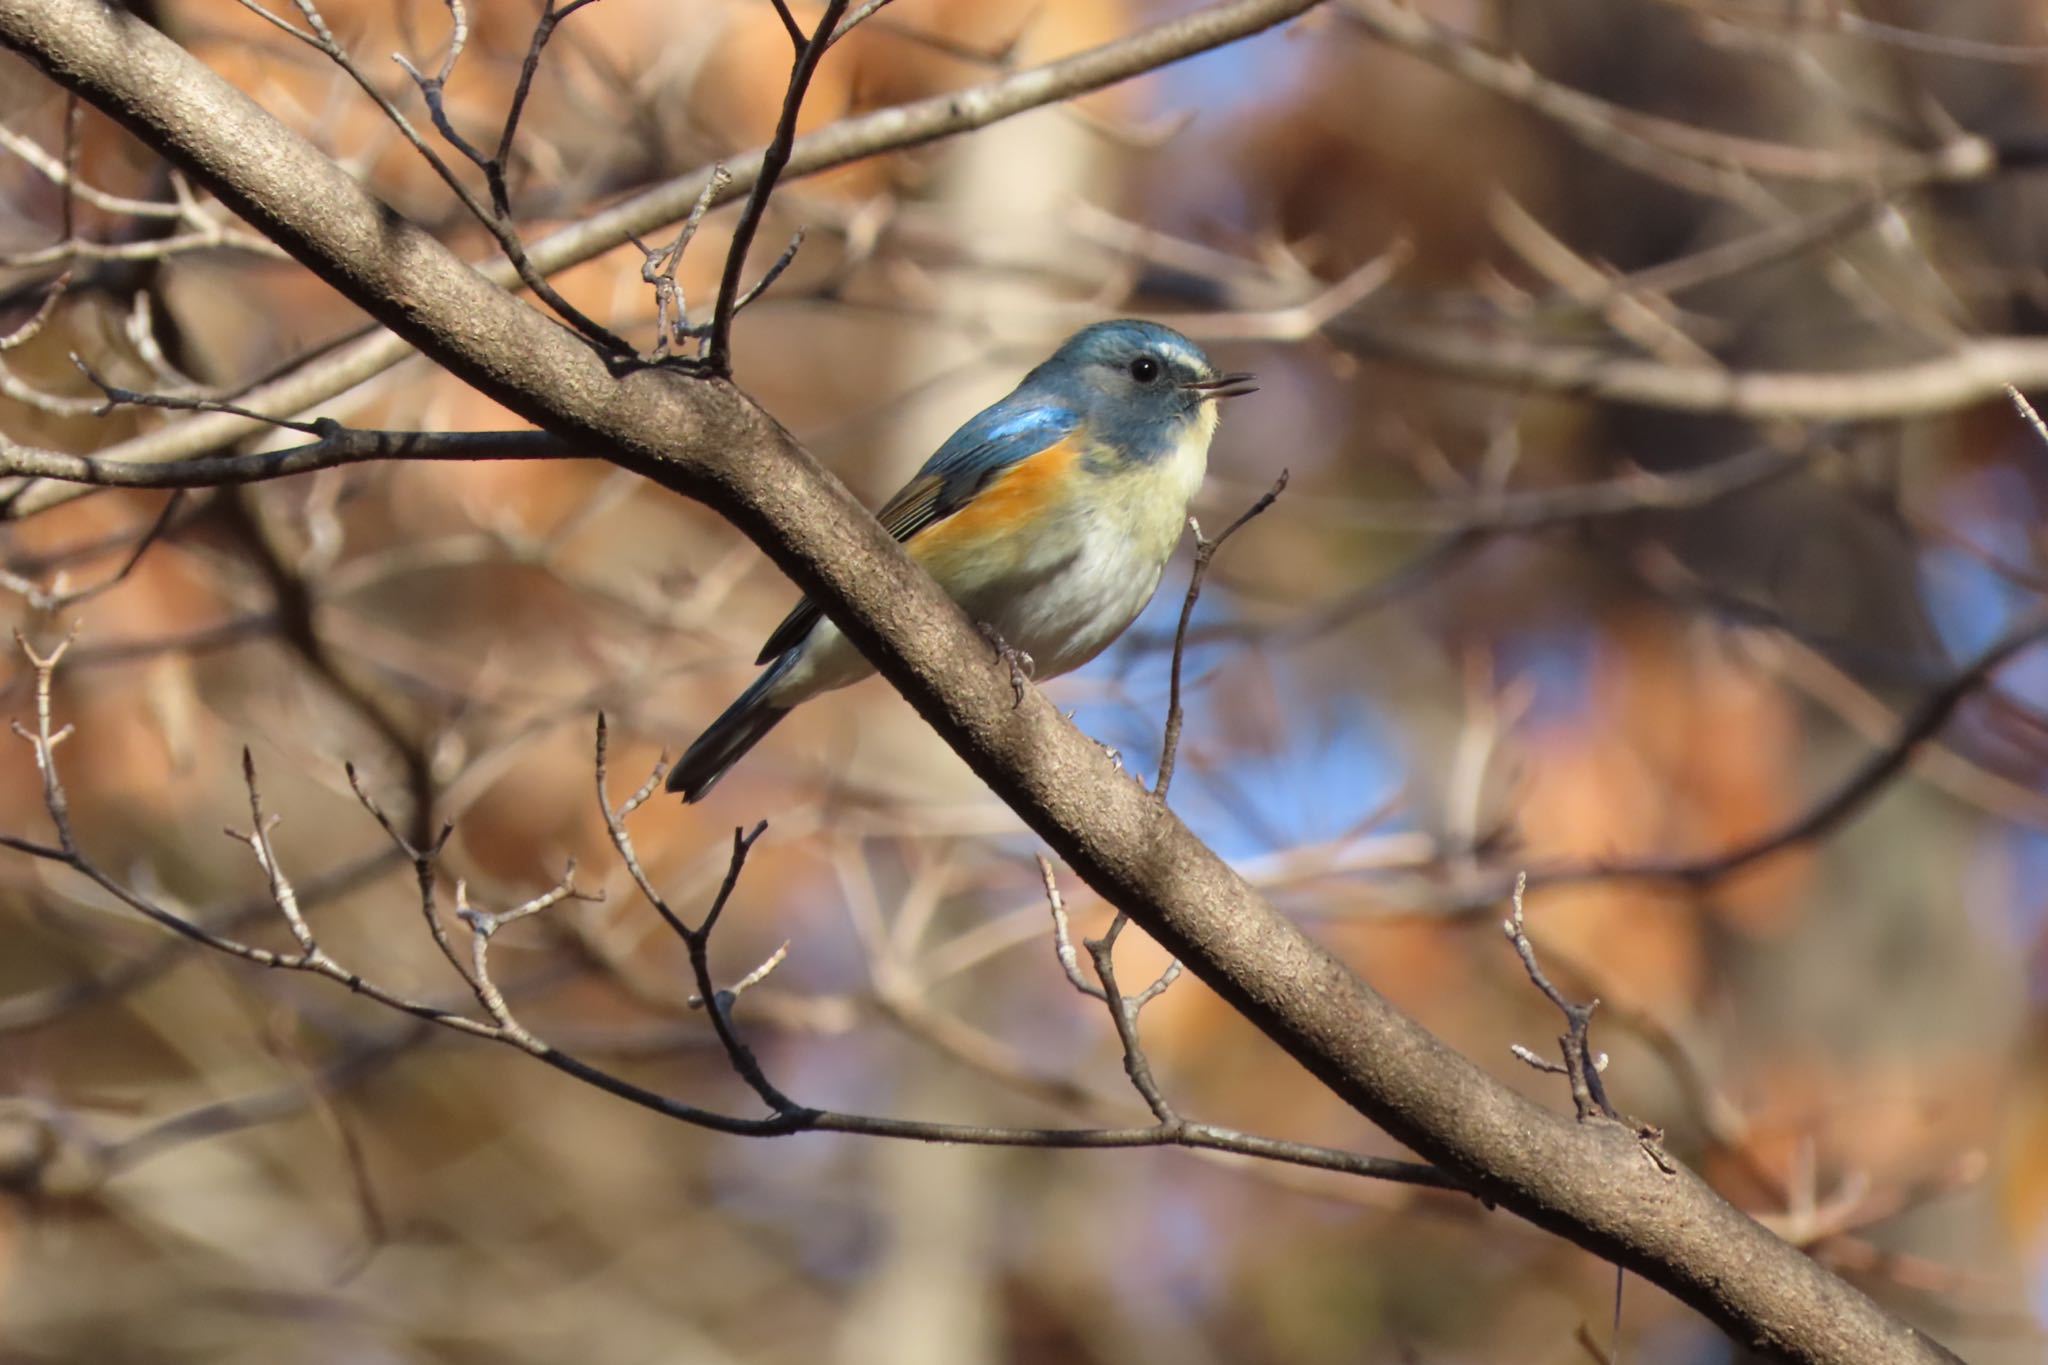 桐生自然観察の森 ルリビタキの写真 by 中学生探鳥家